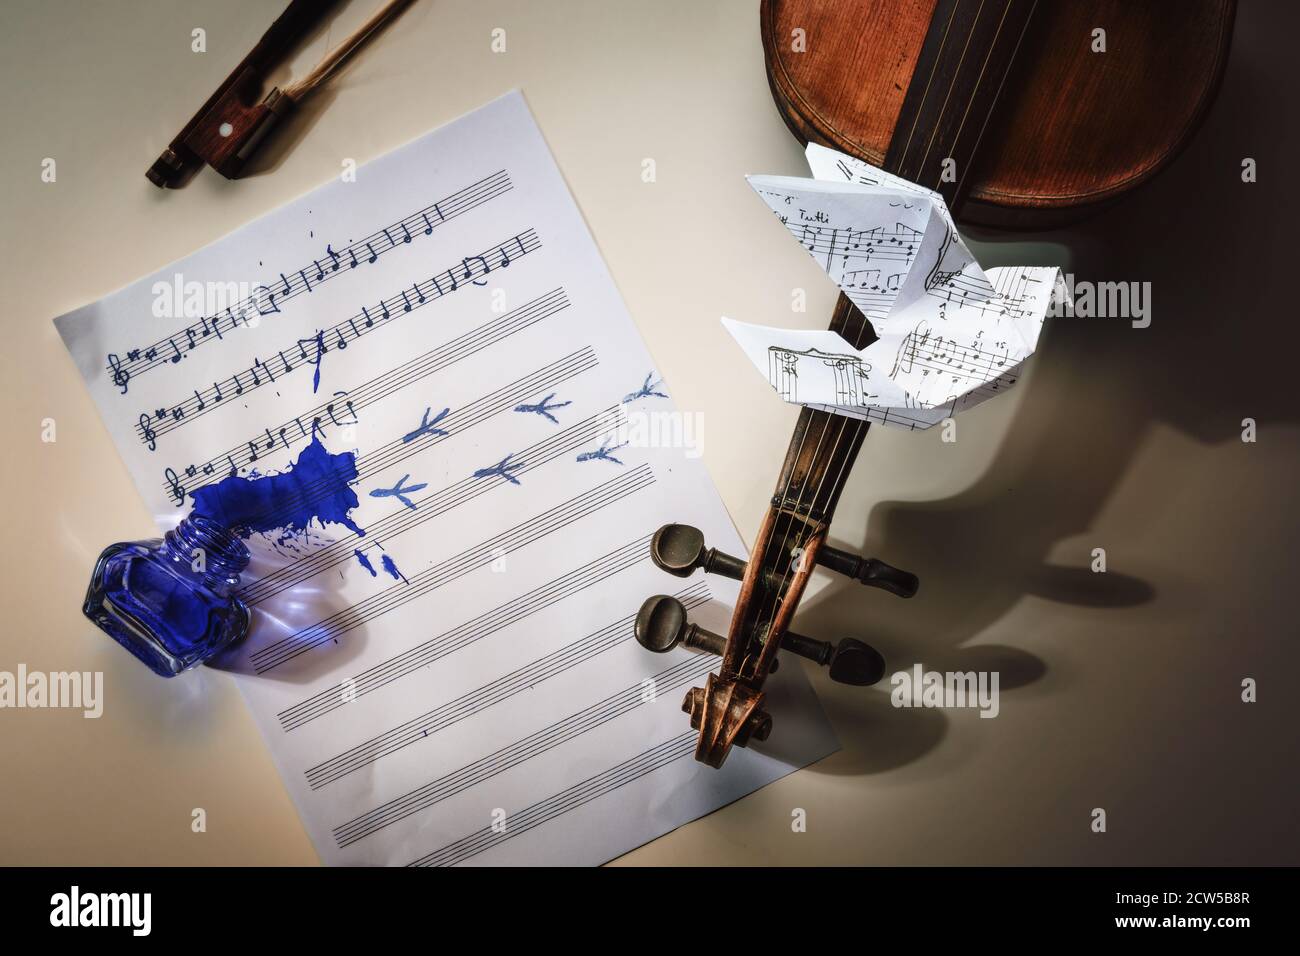 Violon et une feuille de musique avec chanson manuscrite commencée tous les oiseaux sont déjà ici, pot d'encre renversé, empreintes d'oiseaux et un flyi de colombe d'origami Banque D'Images